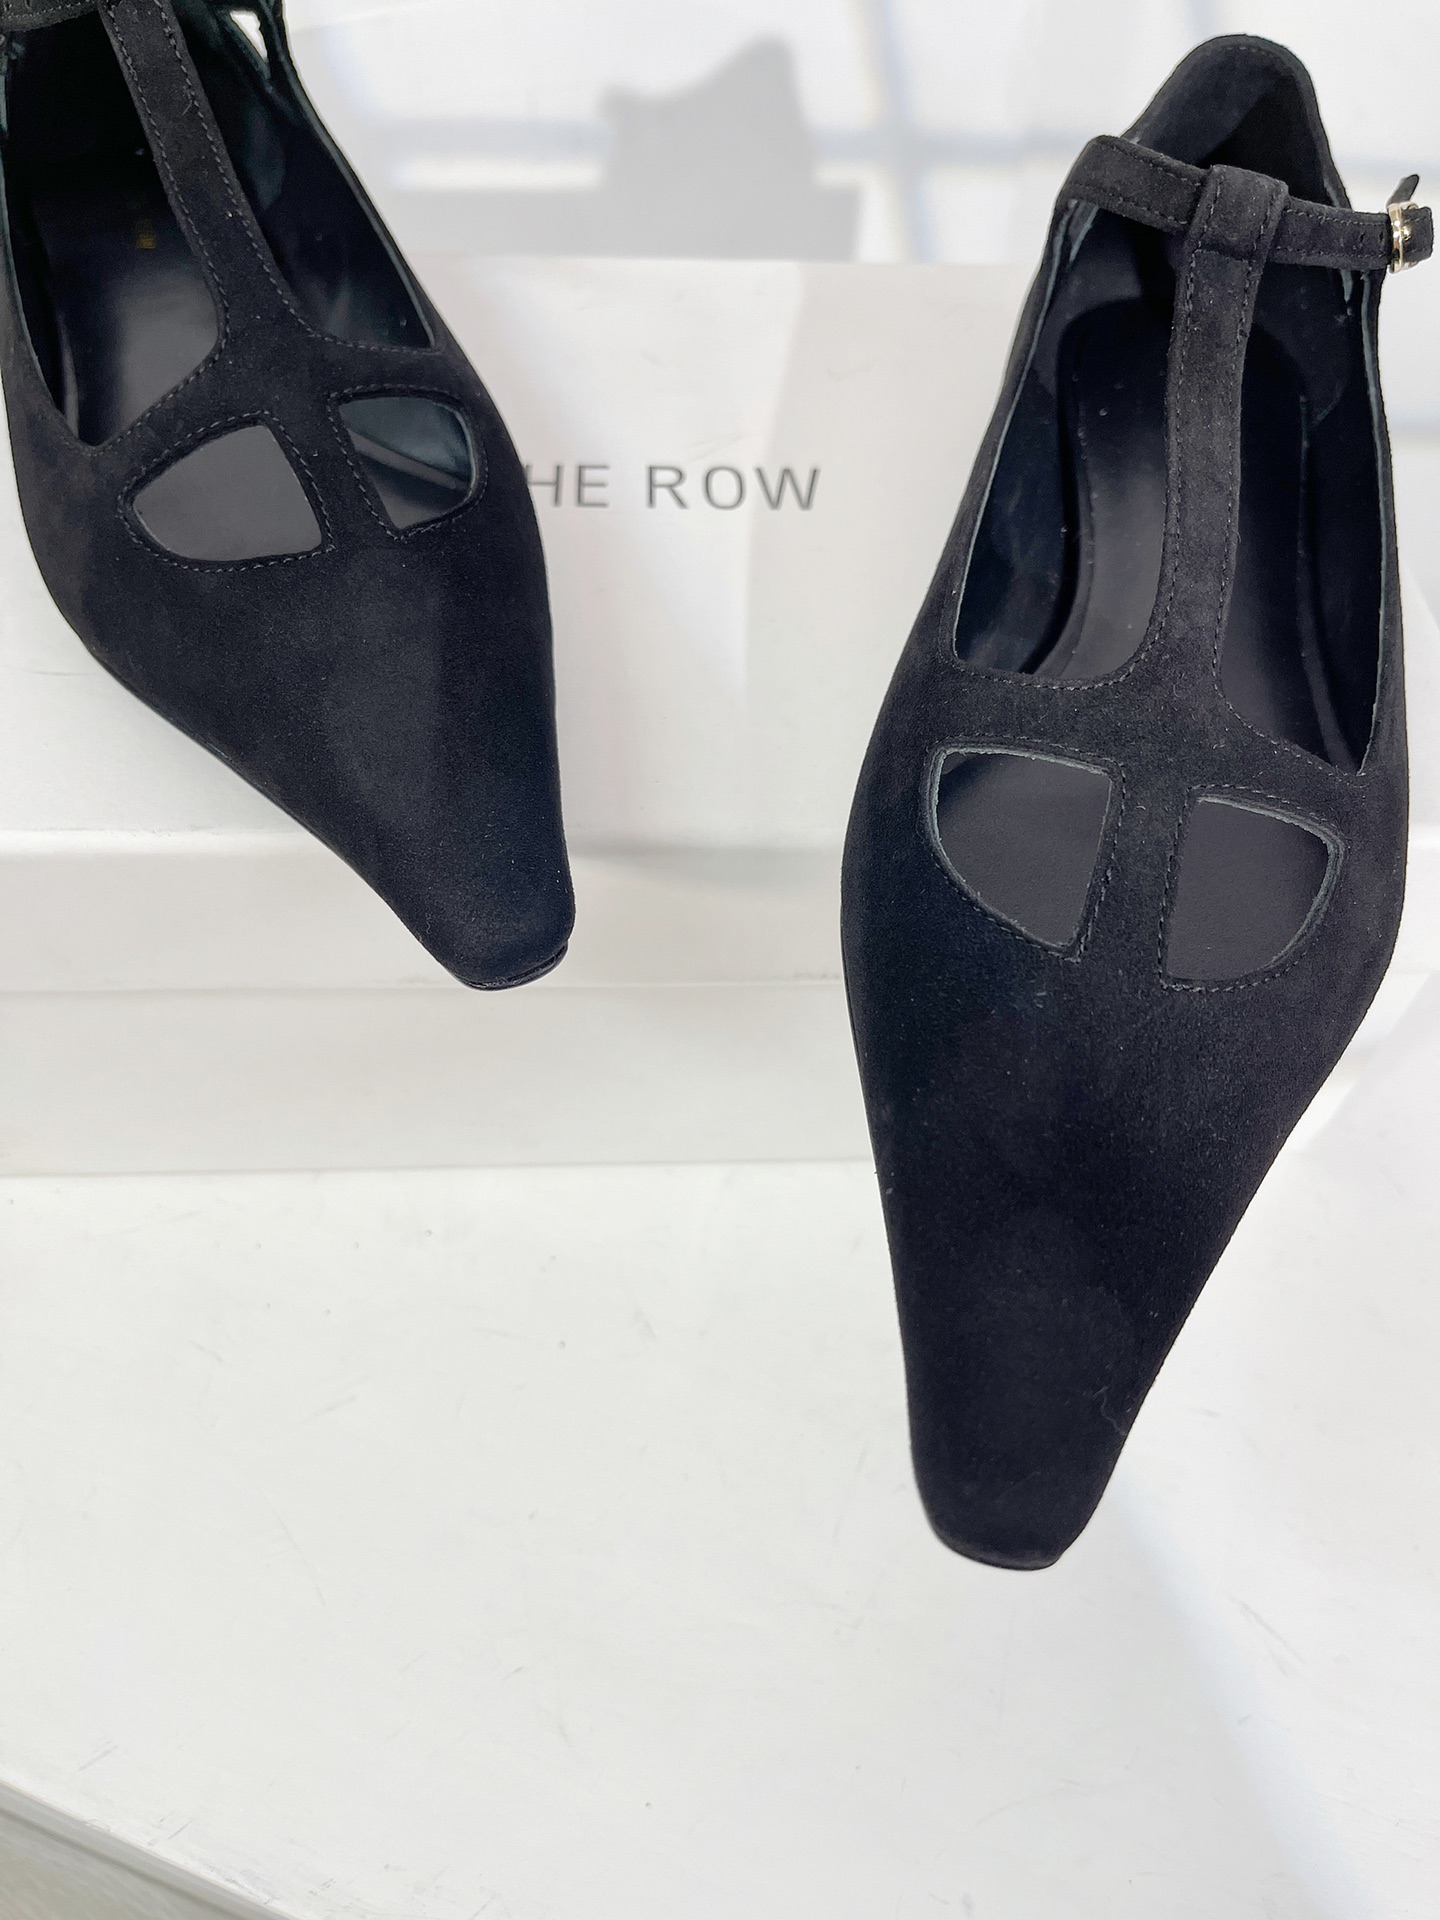 Therow23新款T带平底尖头单鞋上脚舒适穿上就是美美的小仙女质感也是杠杠的搭配长裙和阔腿裤都是可以的